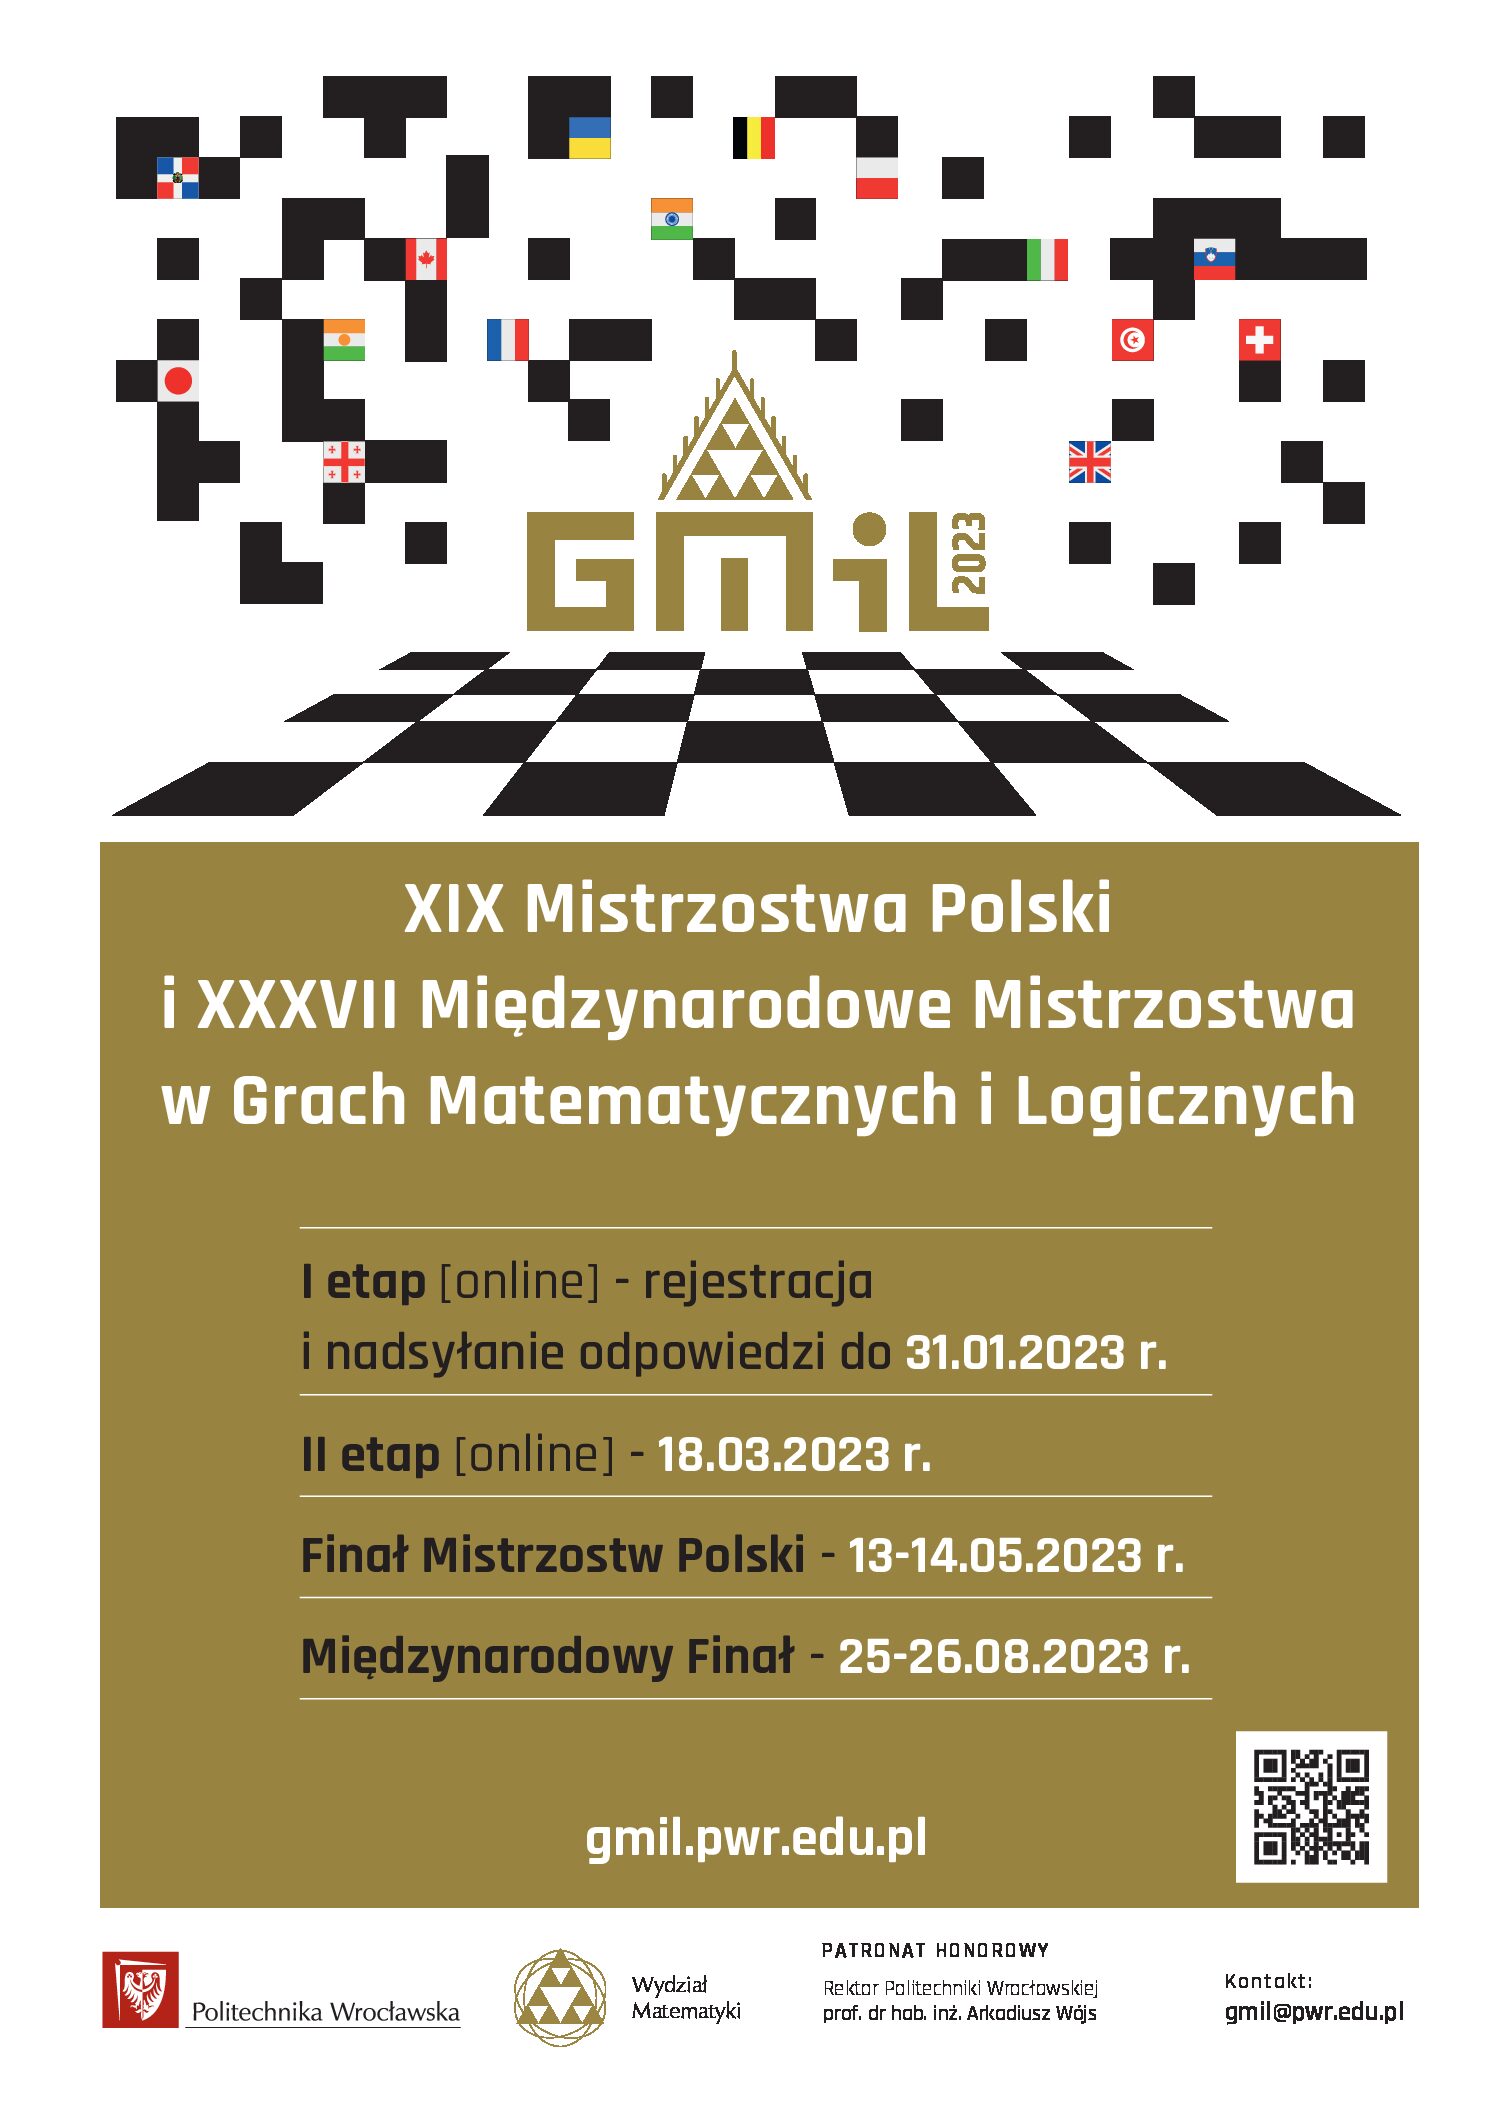 XIX Mistrzostwa Polski w Grach Matematycznych i Logicznych